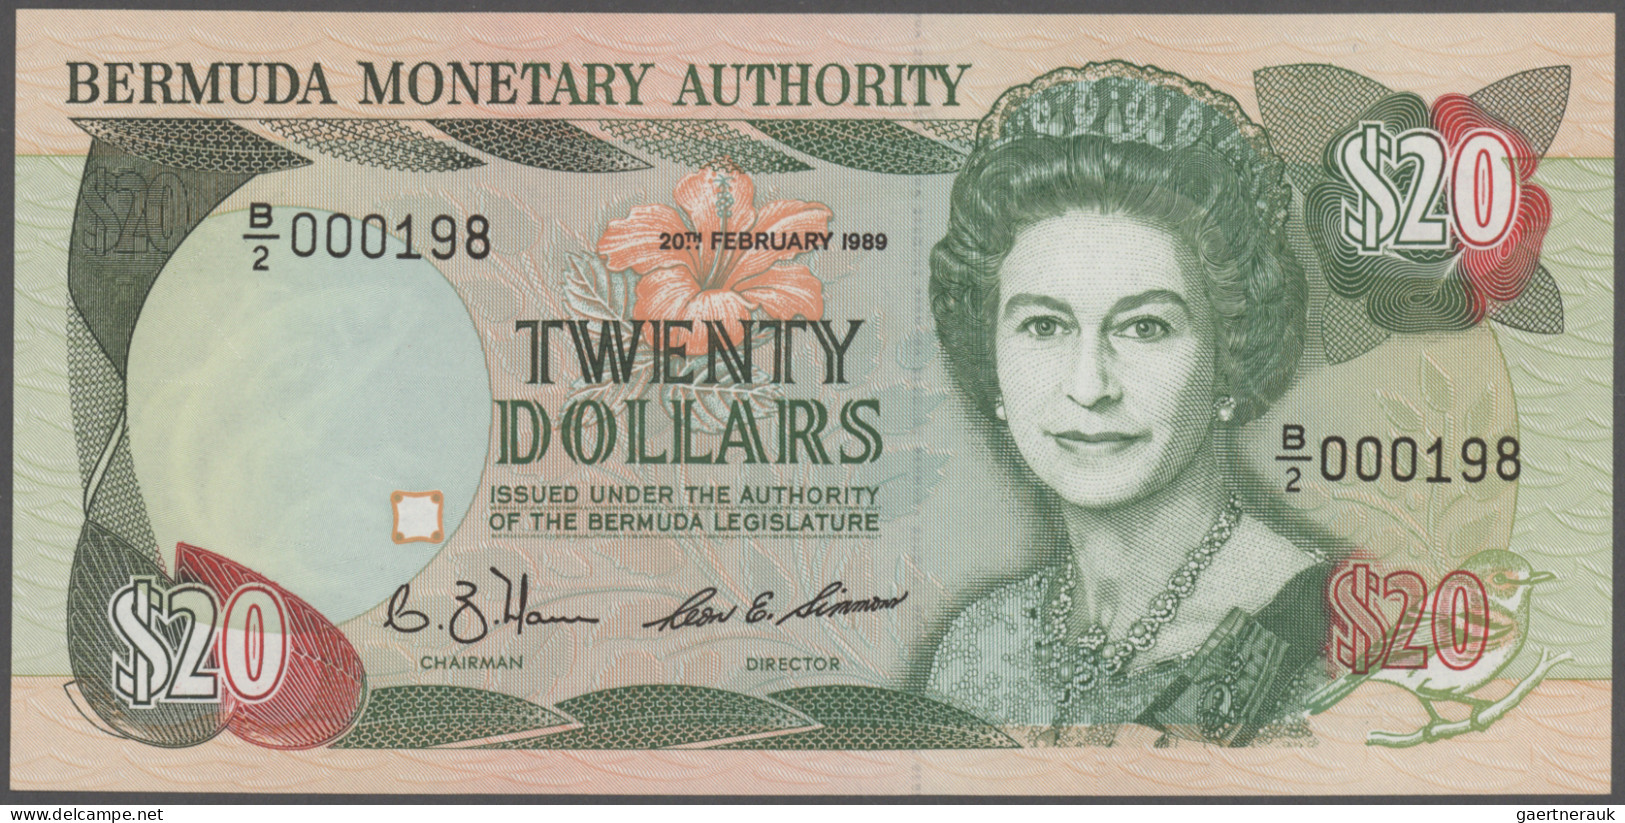 Bermuda: Bermuda Monetary Authority 20 Dollars 1989 With Low Serial # B/2 000198 - Bermudas